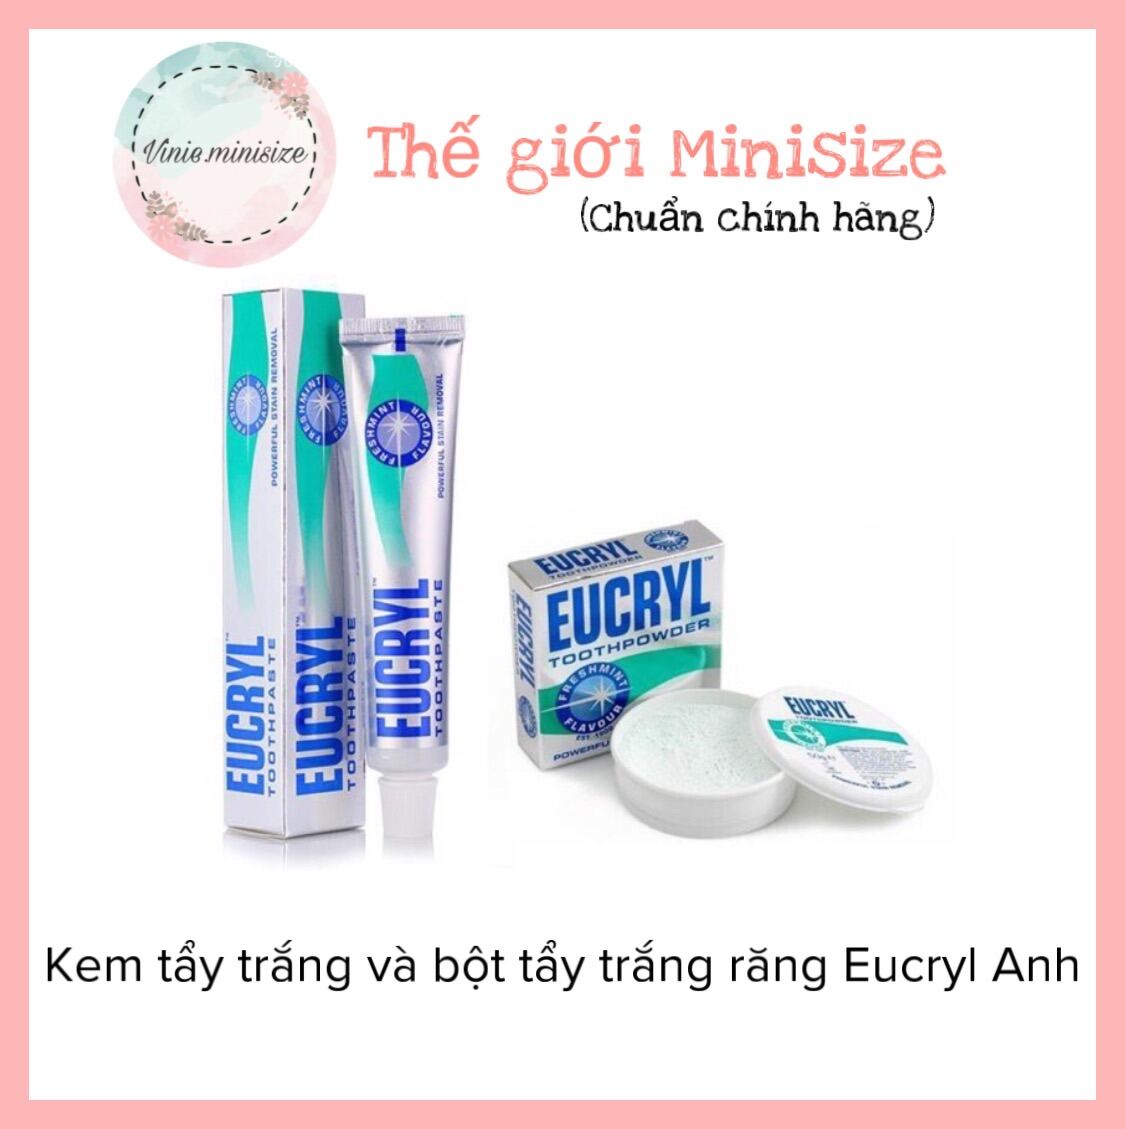 Kem tẩy trắng và bột tẩy trắng răng Eucryl Anh | Vinie.minisize